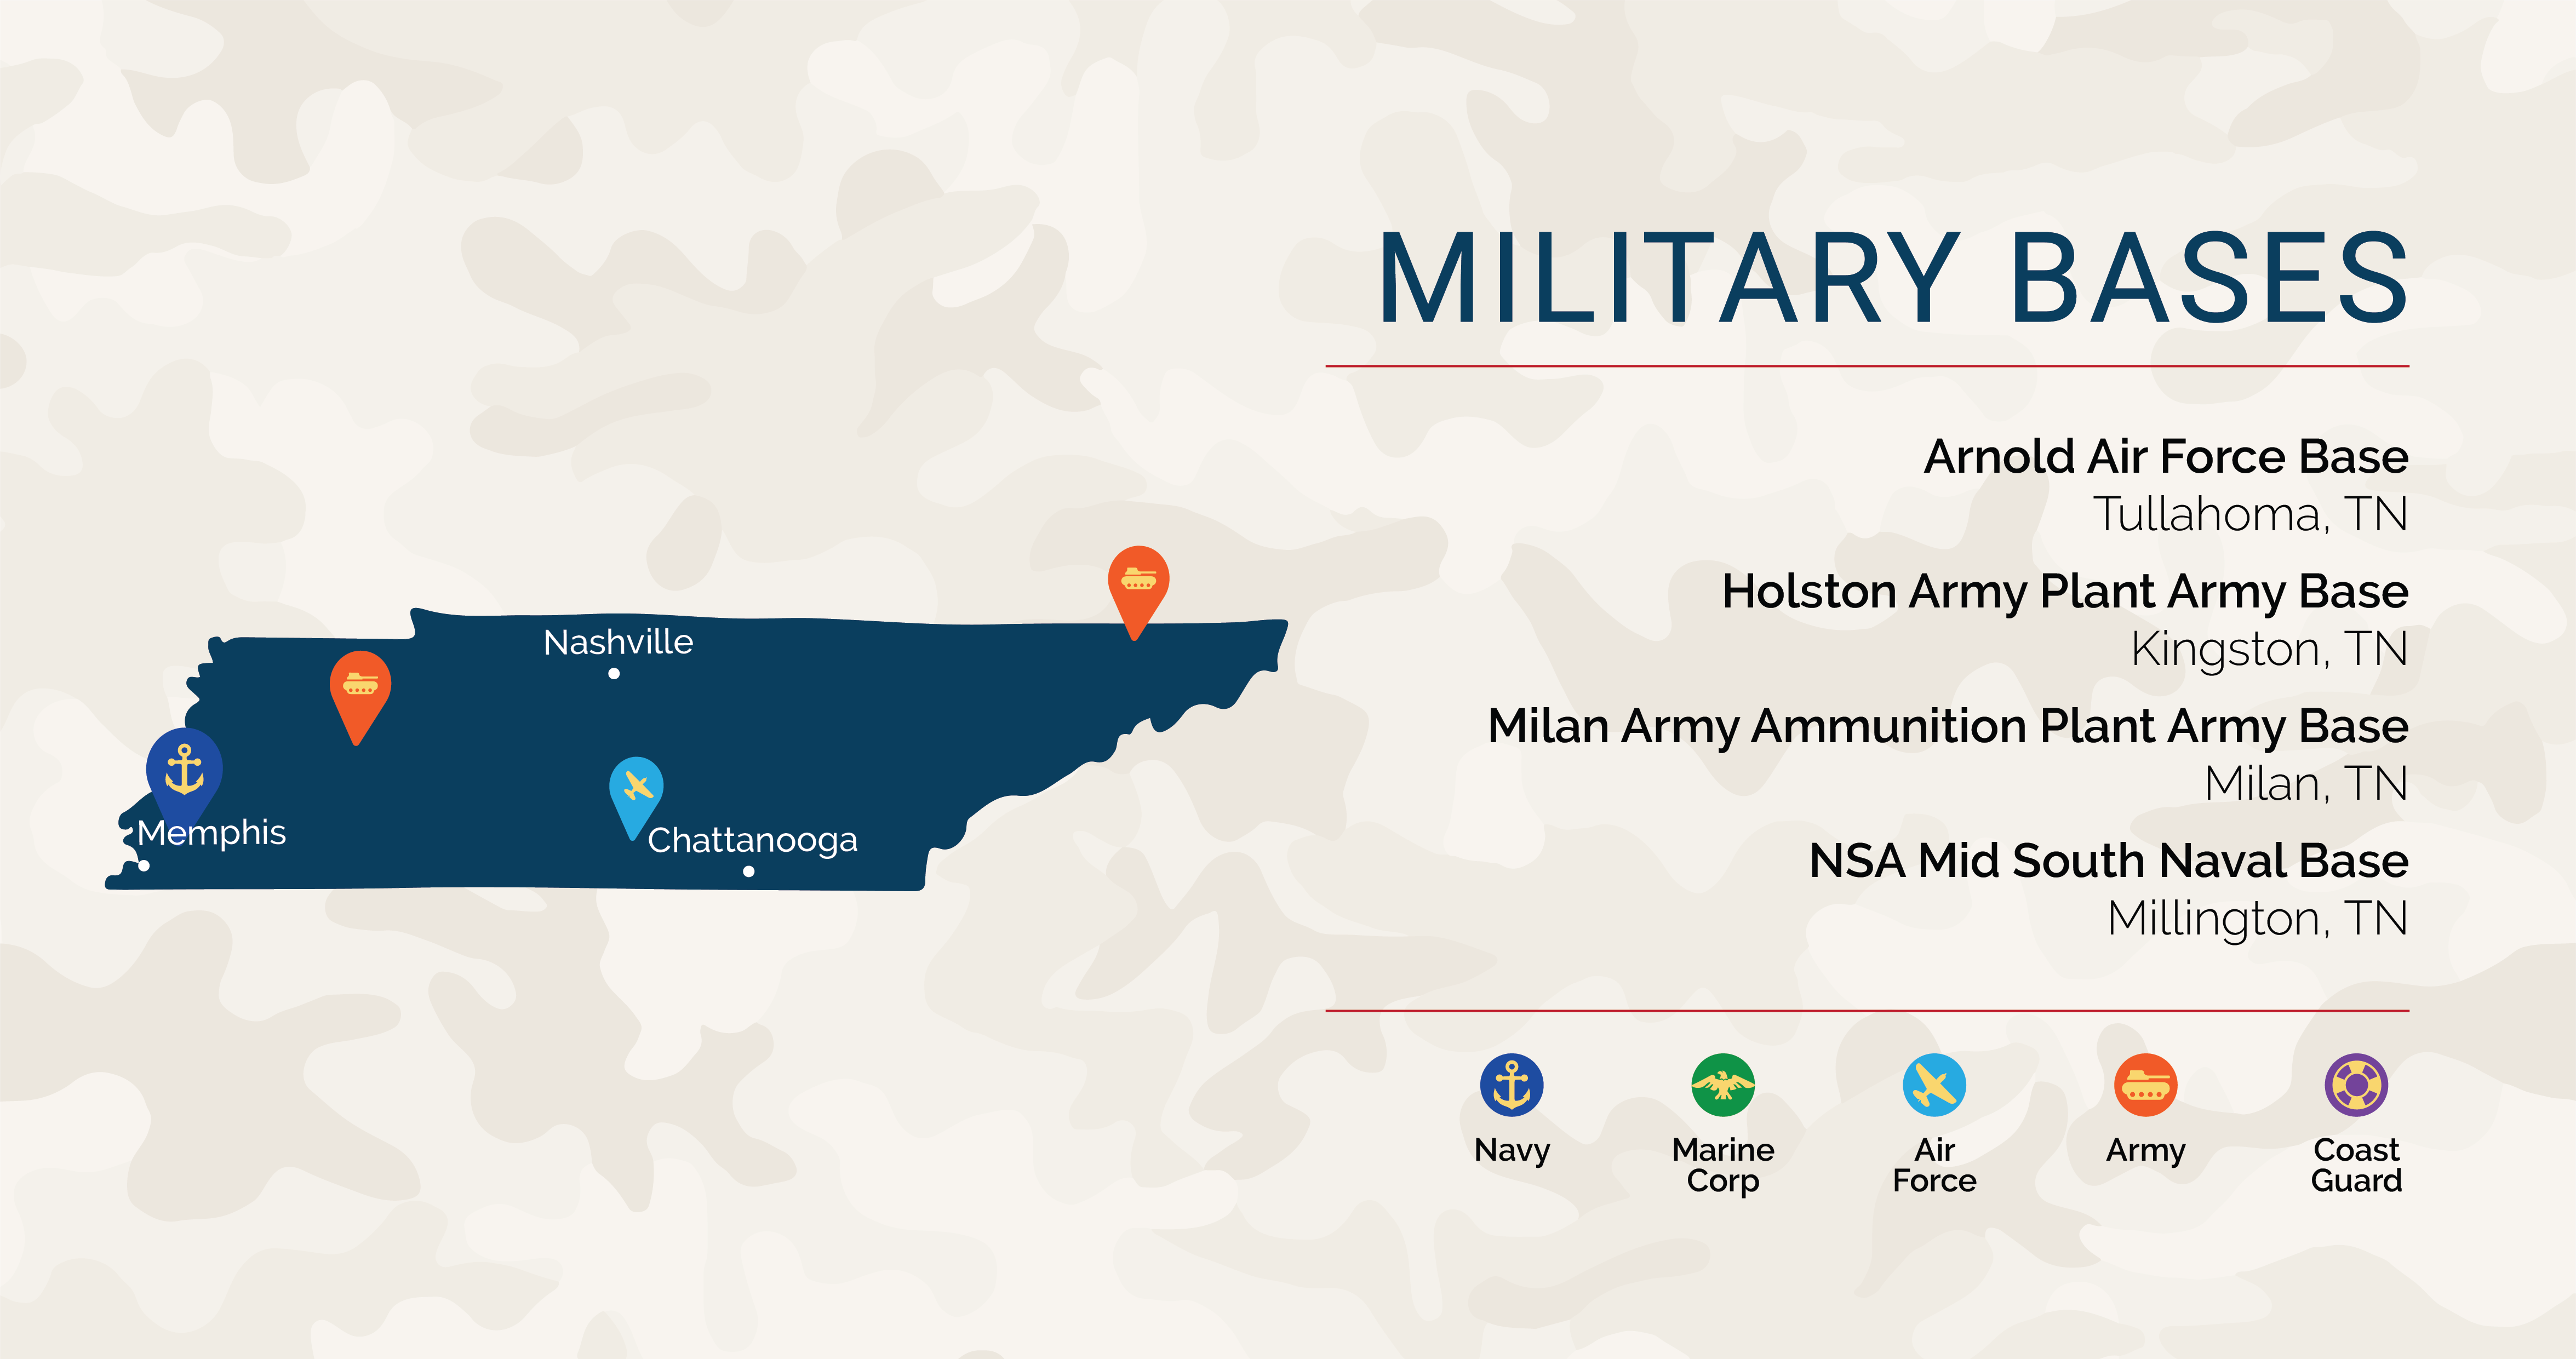 Chattanooga Military Base